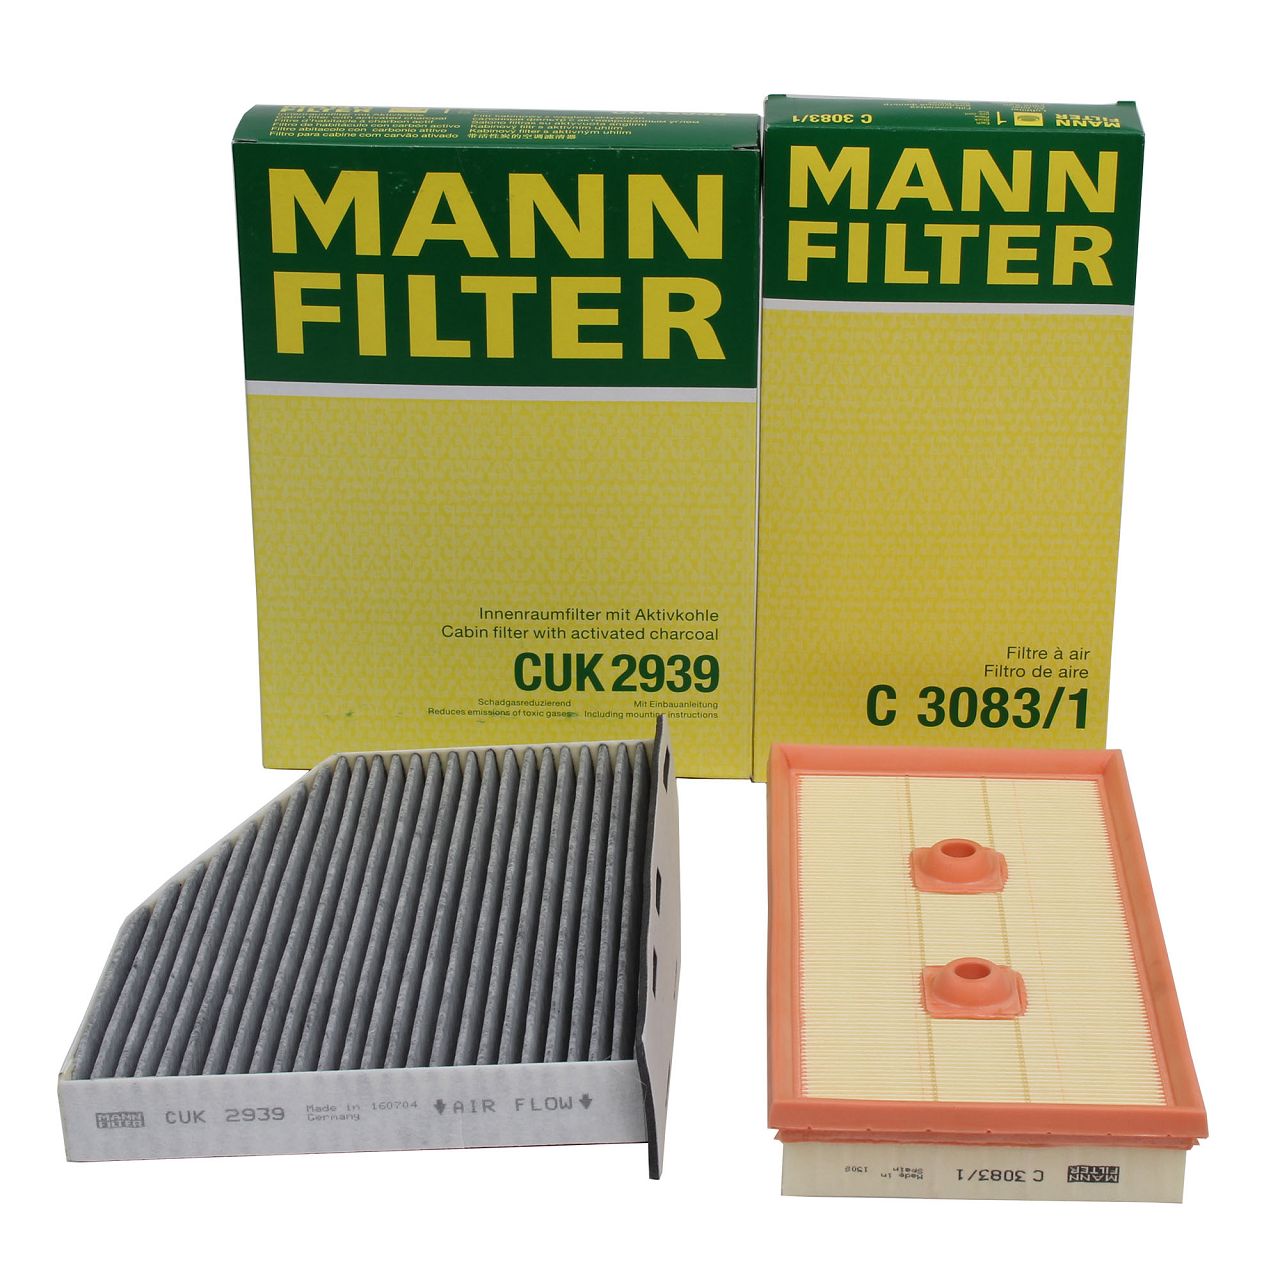 MANN Filterset Innenraum + Luftfilter VW Golf 5 Passat B6 Touran A3 8P Octavia 2 1.6 FSI